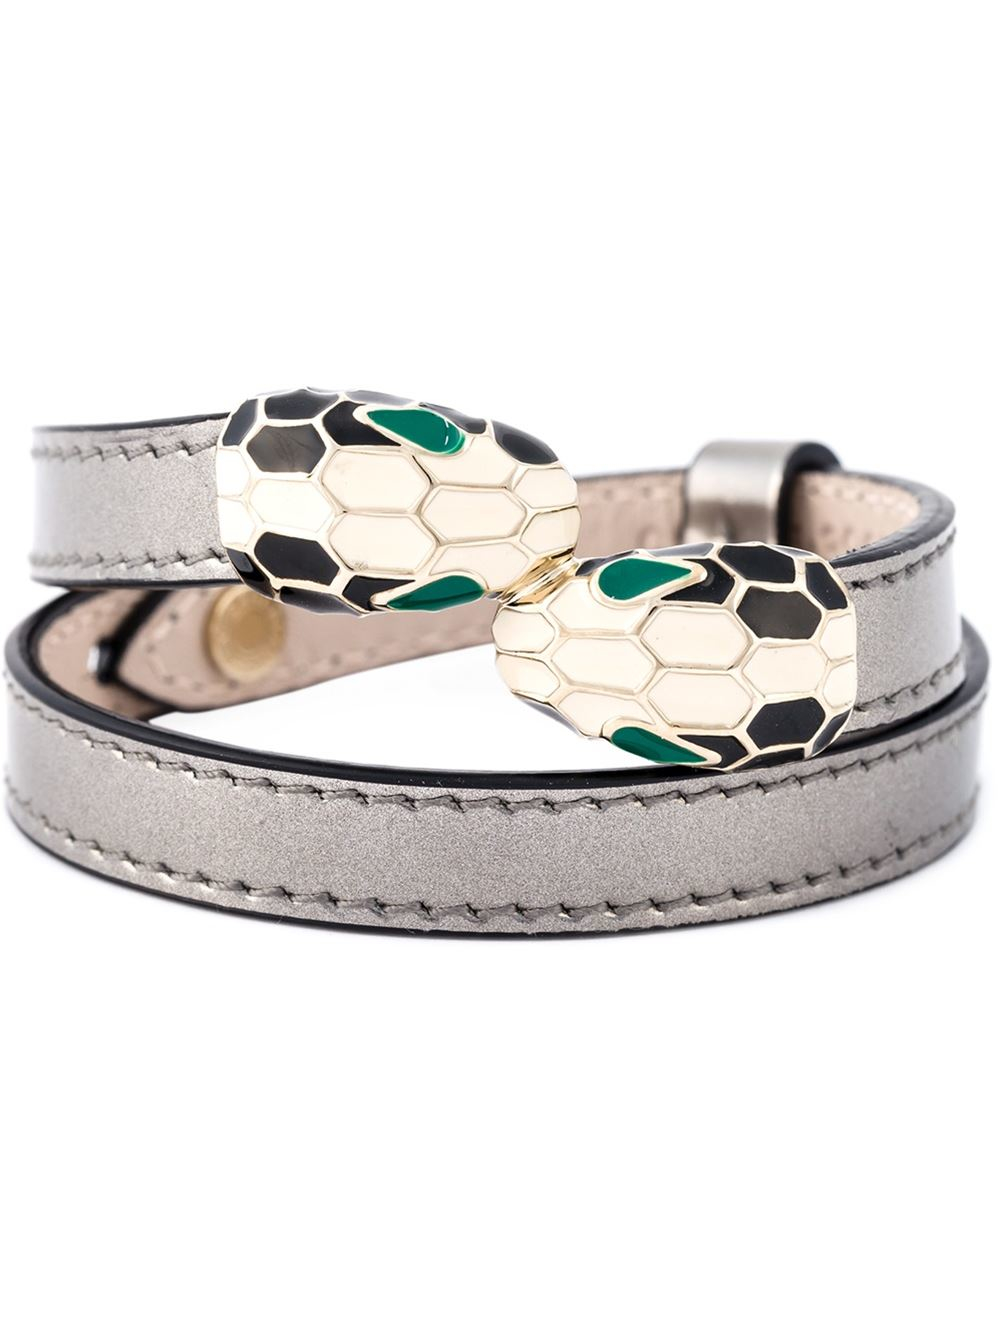 bulgari leather serpenti bracelet